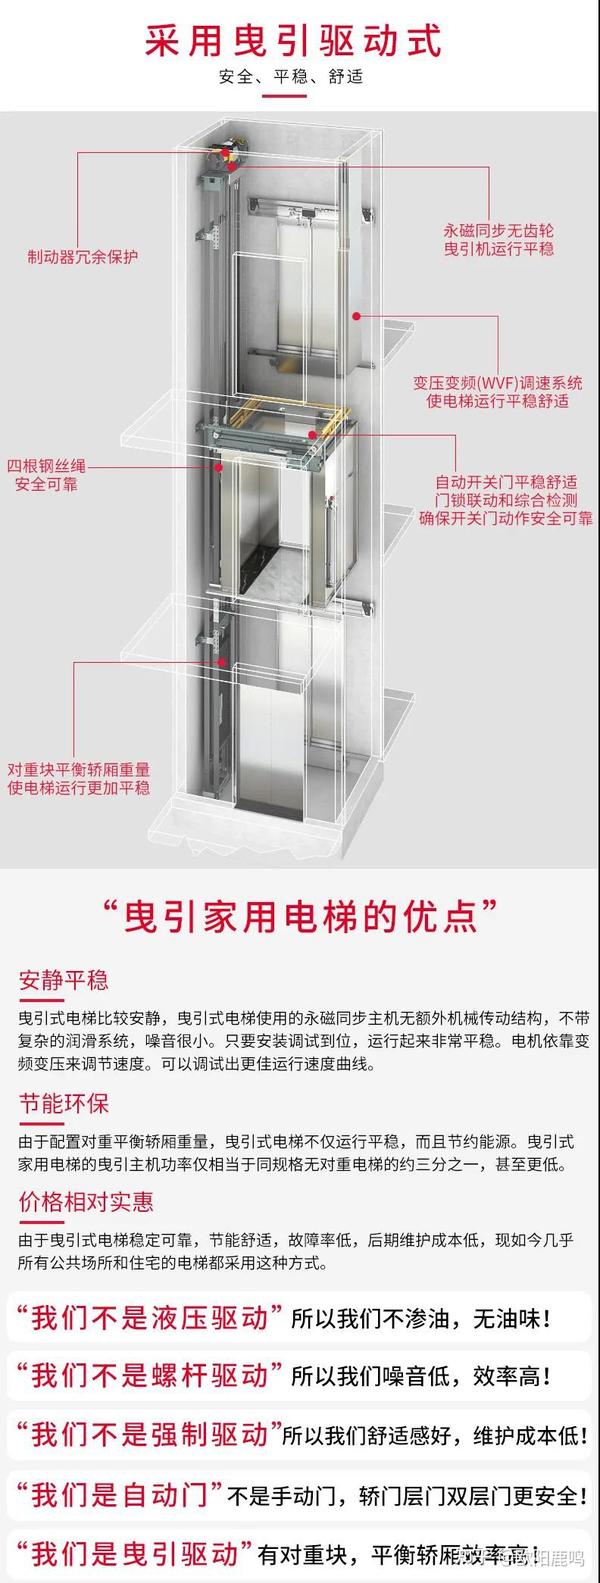 上海三菱电梯全面进入家用版块,菱珑·家用电梯是一款集新颖,高端